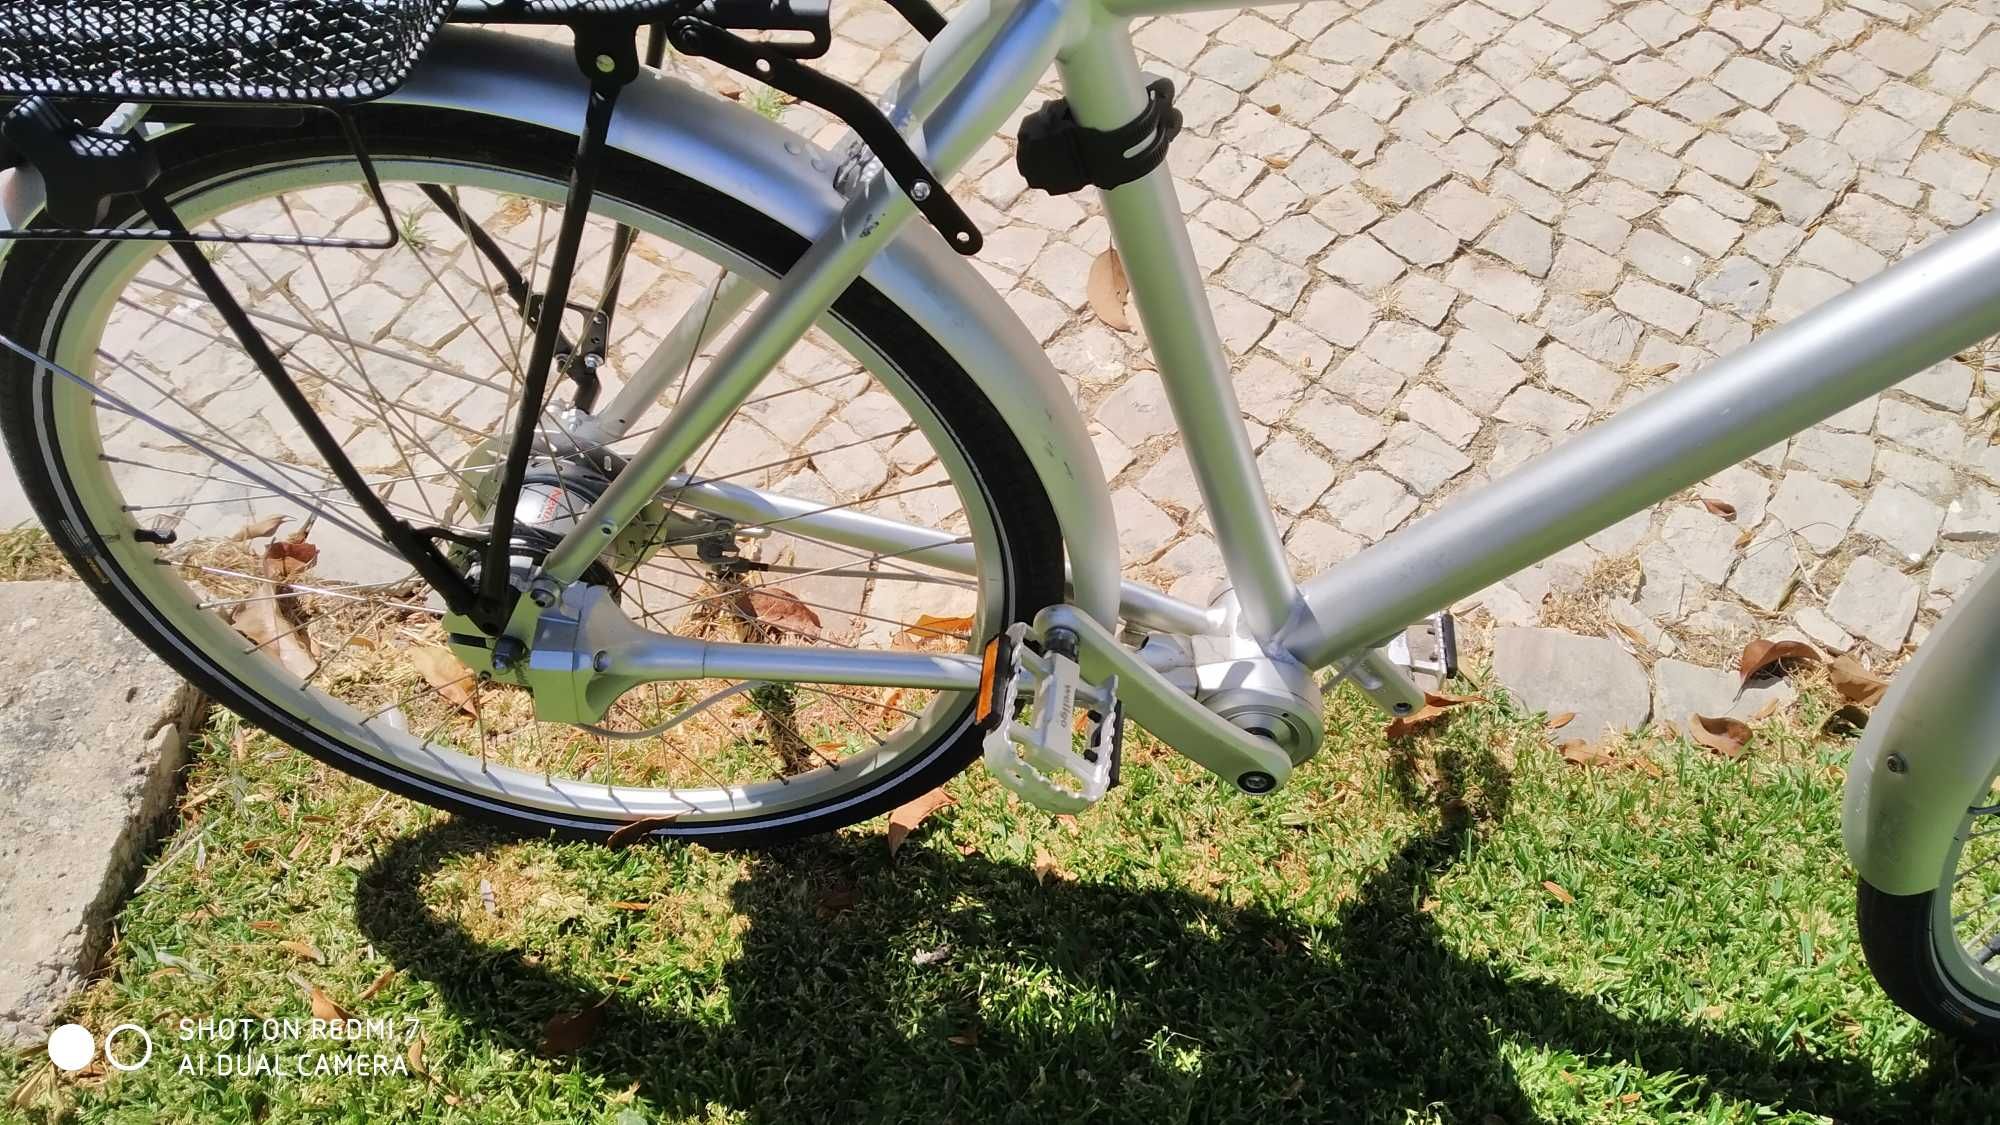 Bicicleta Biomega Amsterdam com veio de transmissão.